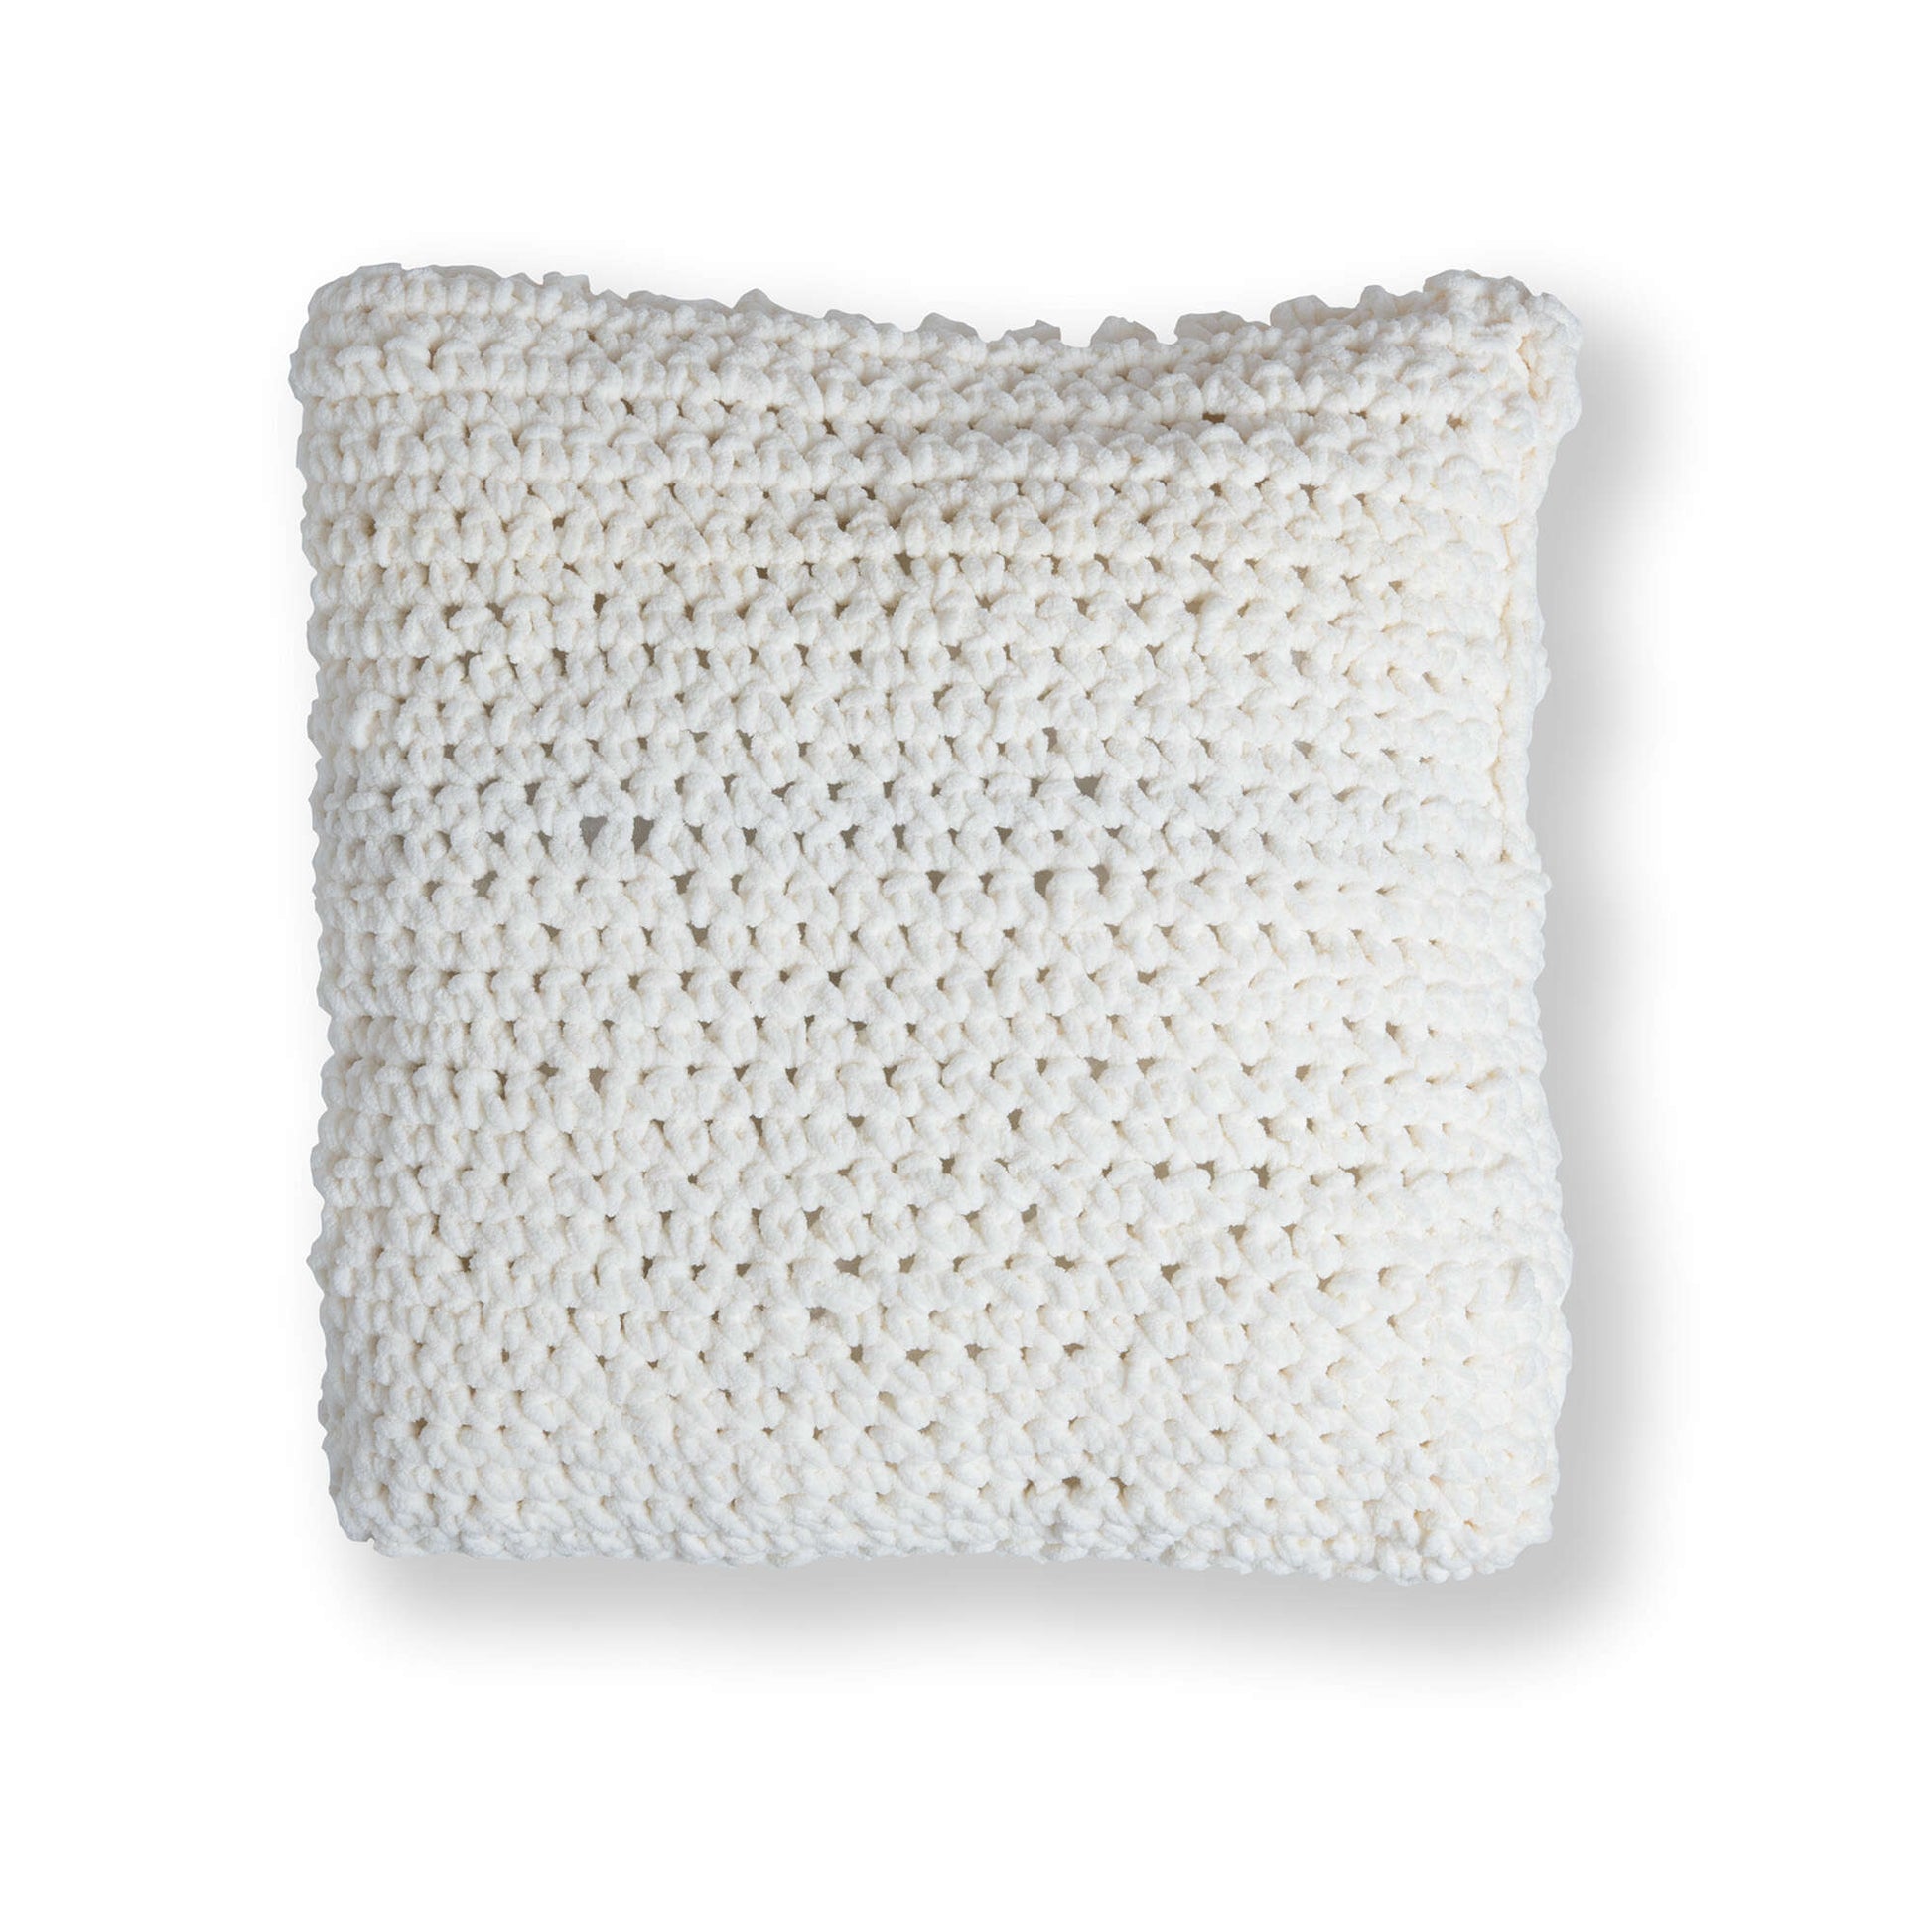 Free Bernat Cozy Crochet Tree Pillow Pattern